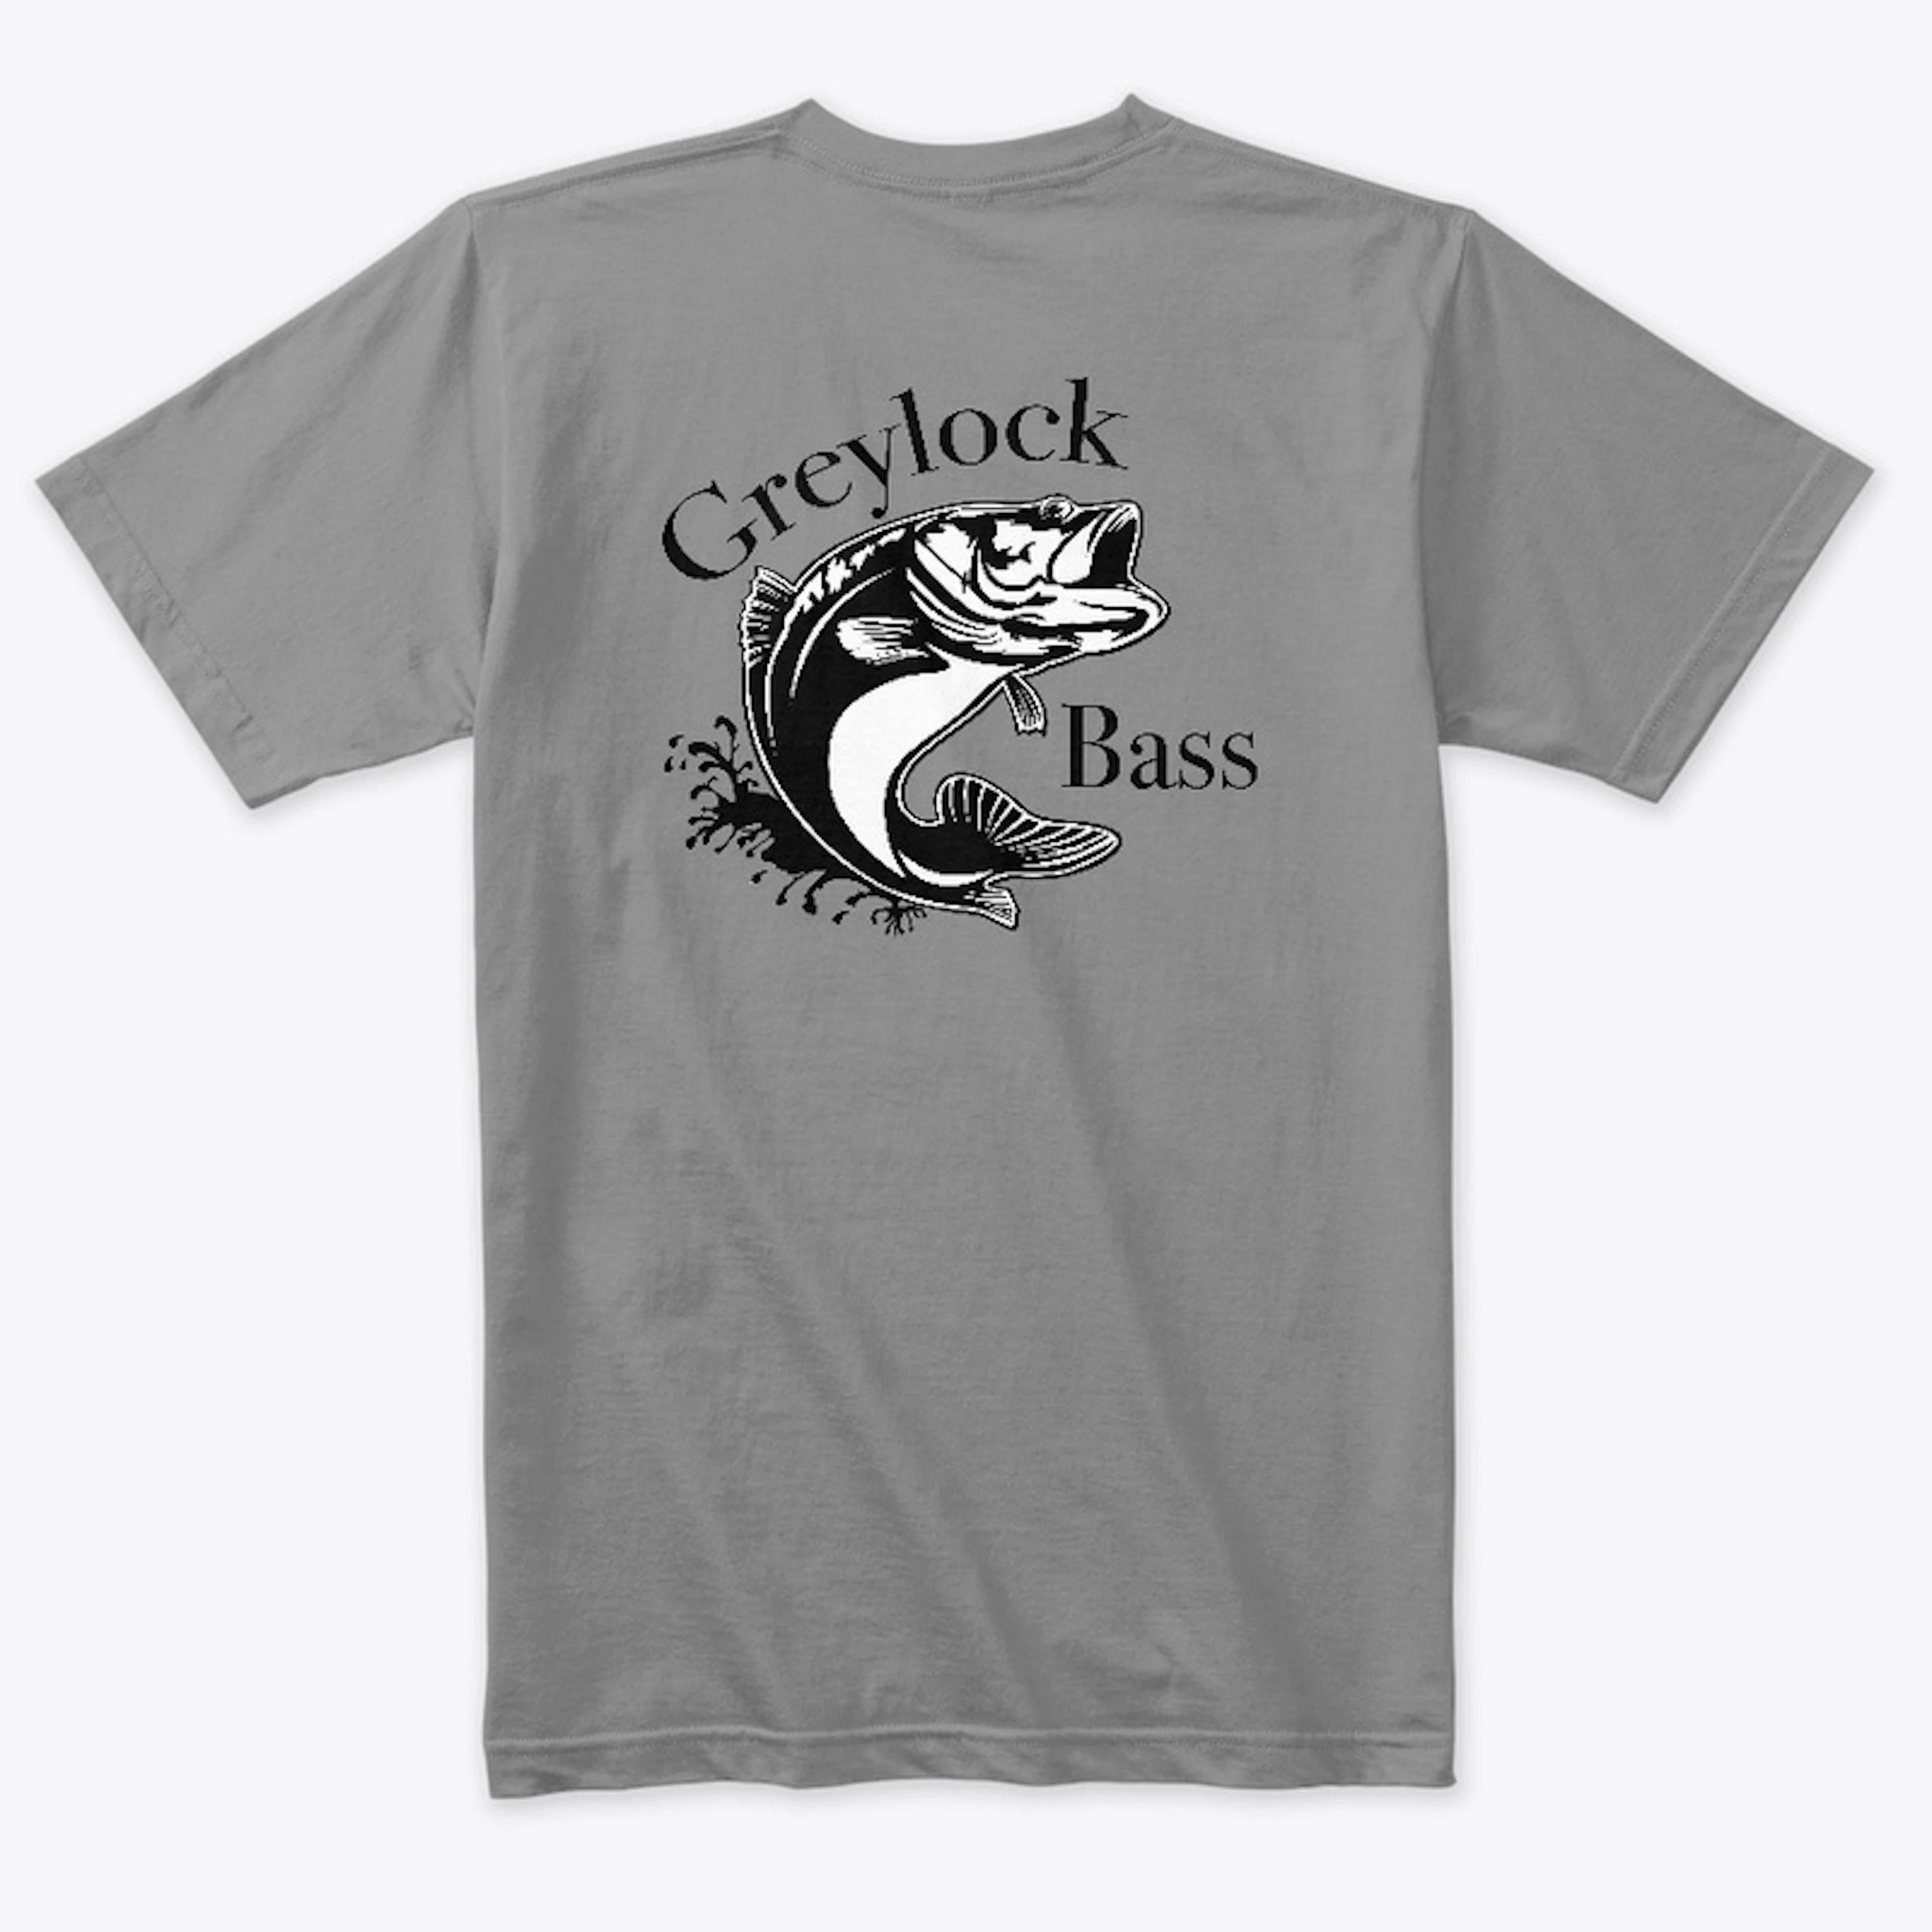 Greylock Bass Club Apparel